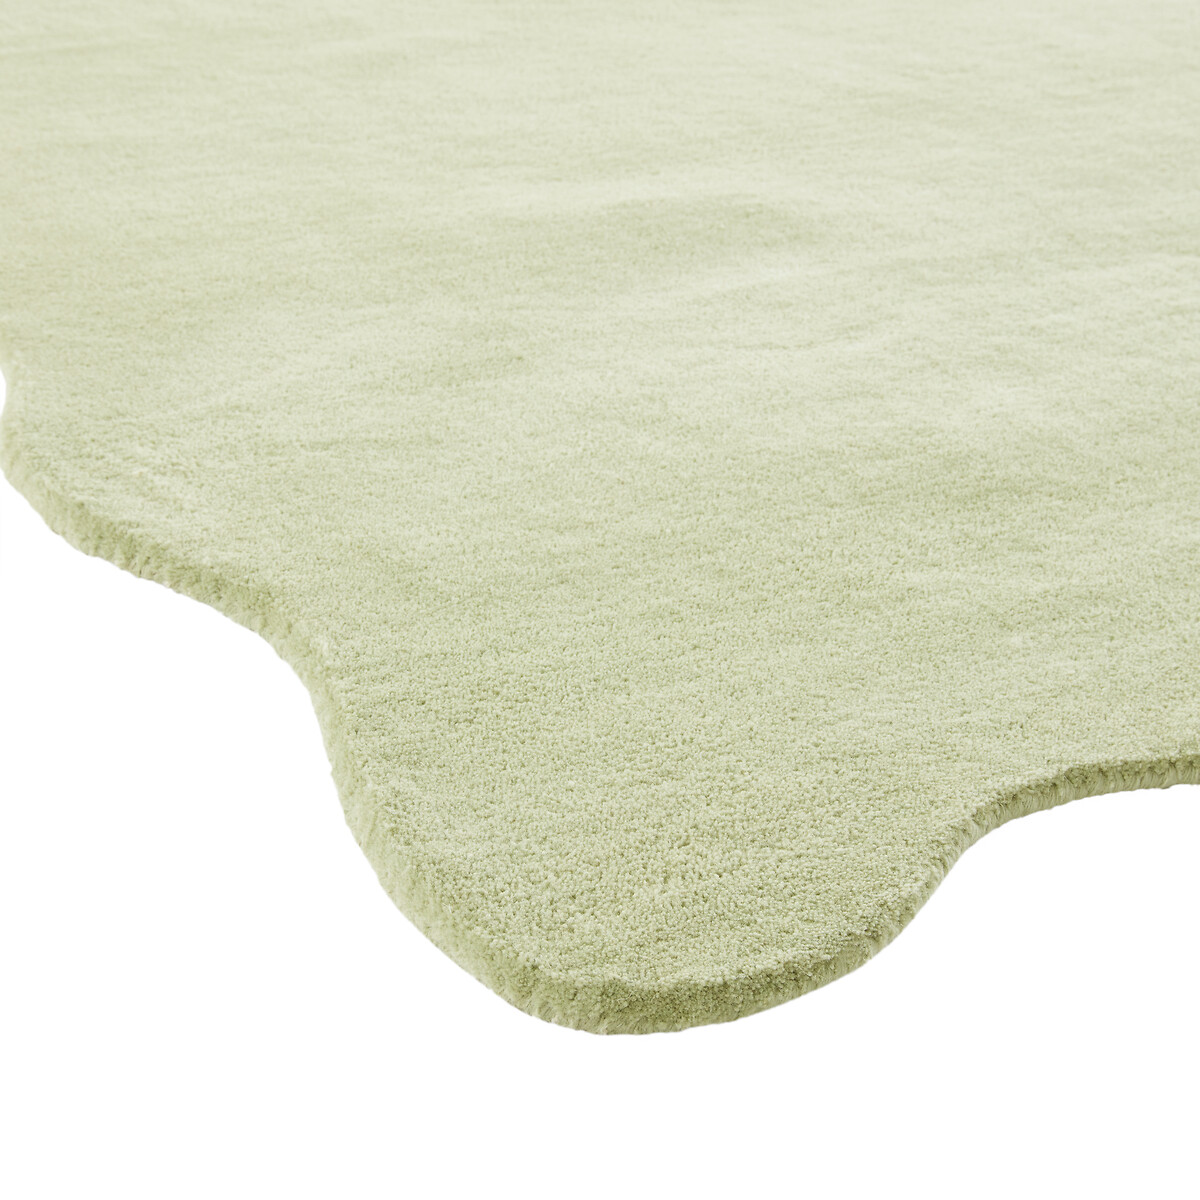 Ковер С чешуйчатым узором из шерсти Scalero 160 x 230 см зеленый LaRedoute, размер 160 x 230 см - фото 2